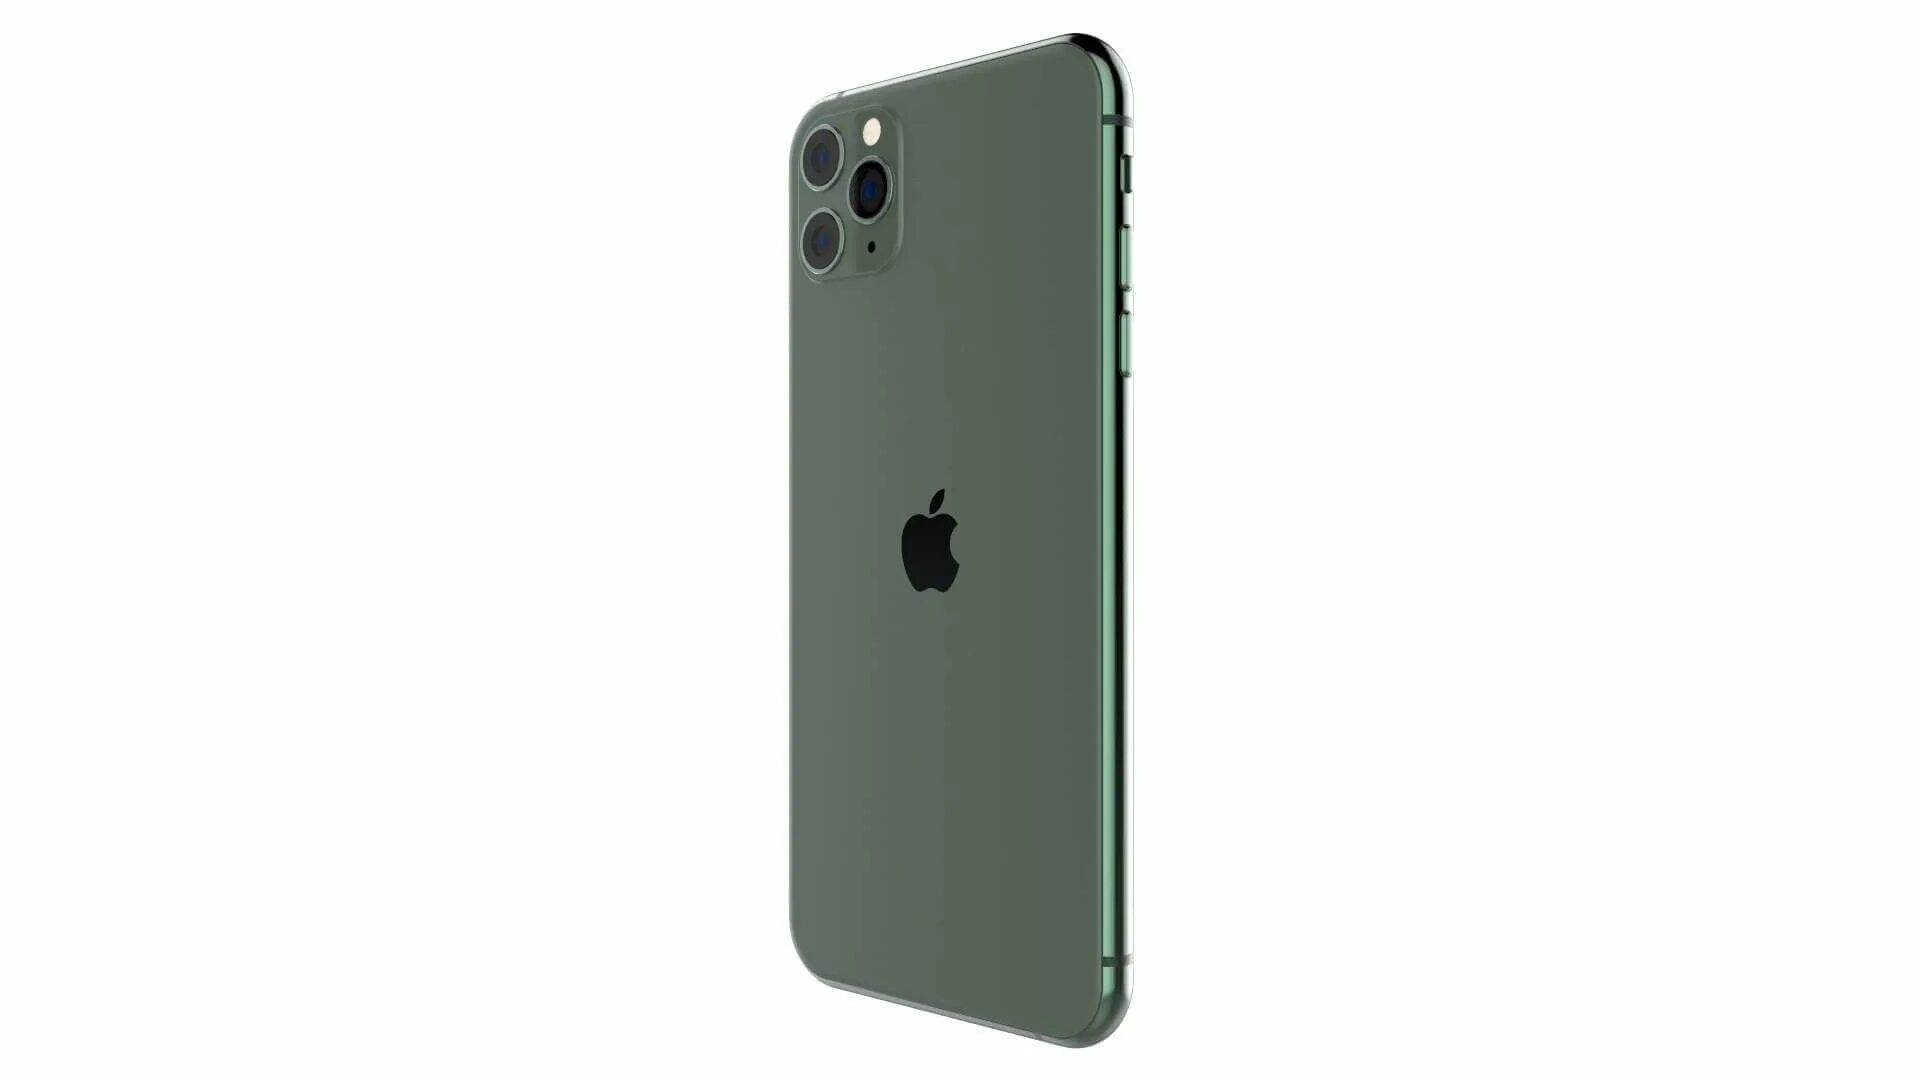 Apple iphone 11 Pro Max 64gb Midnight Green. Apple iphone 11 Pro 64gb Midnight Green. Iphone 11 Pro Max Green. 11 Pro Max Midnight Green. Apple iphone 15 pro max esim 256gb